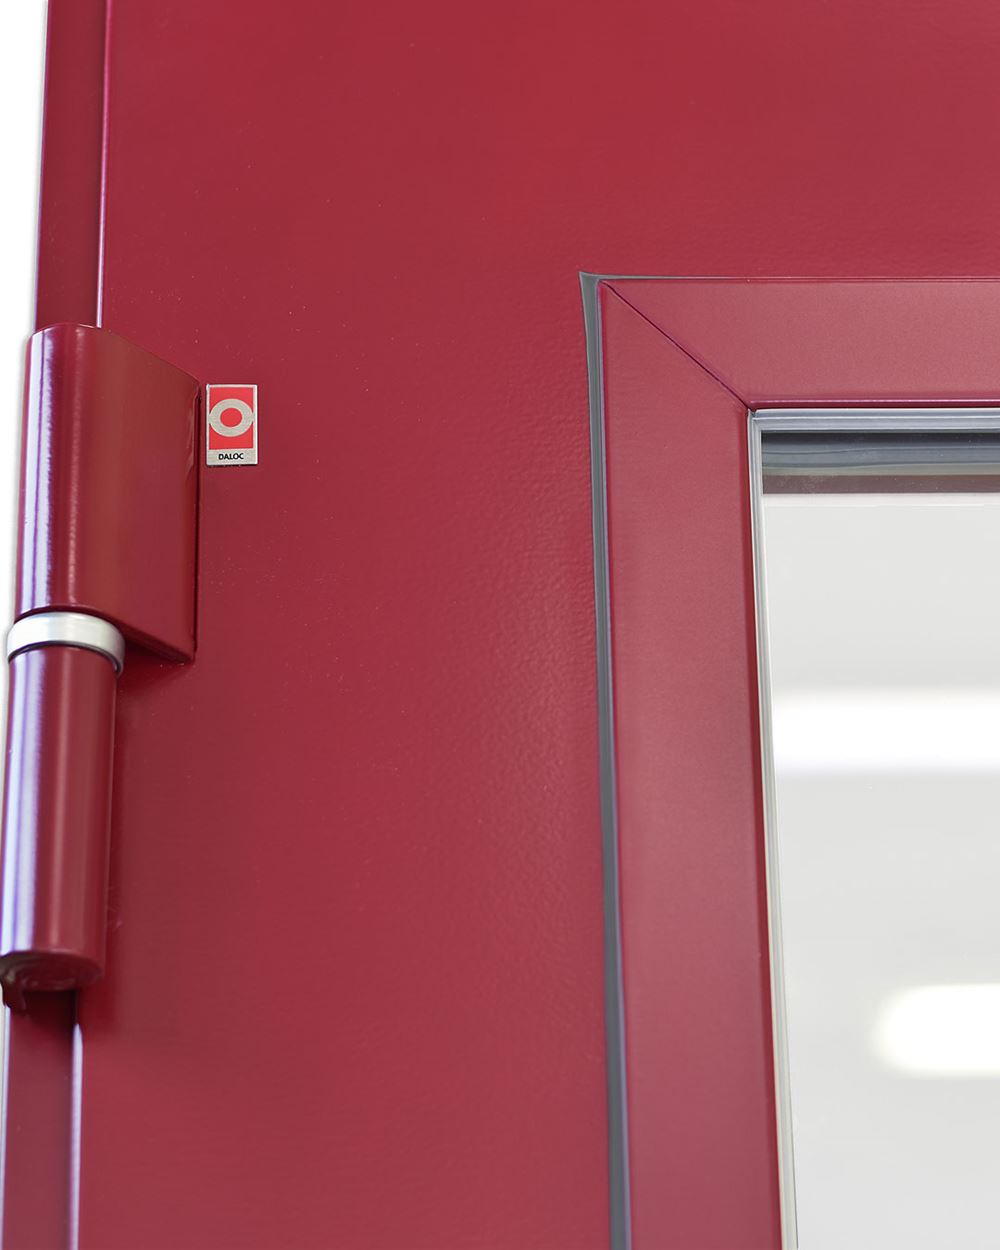 Röd YEPP66 dörr med Daloc märke